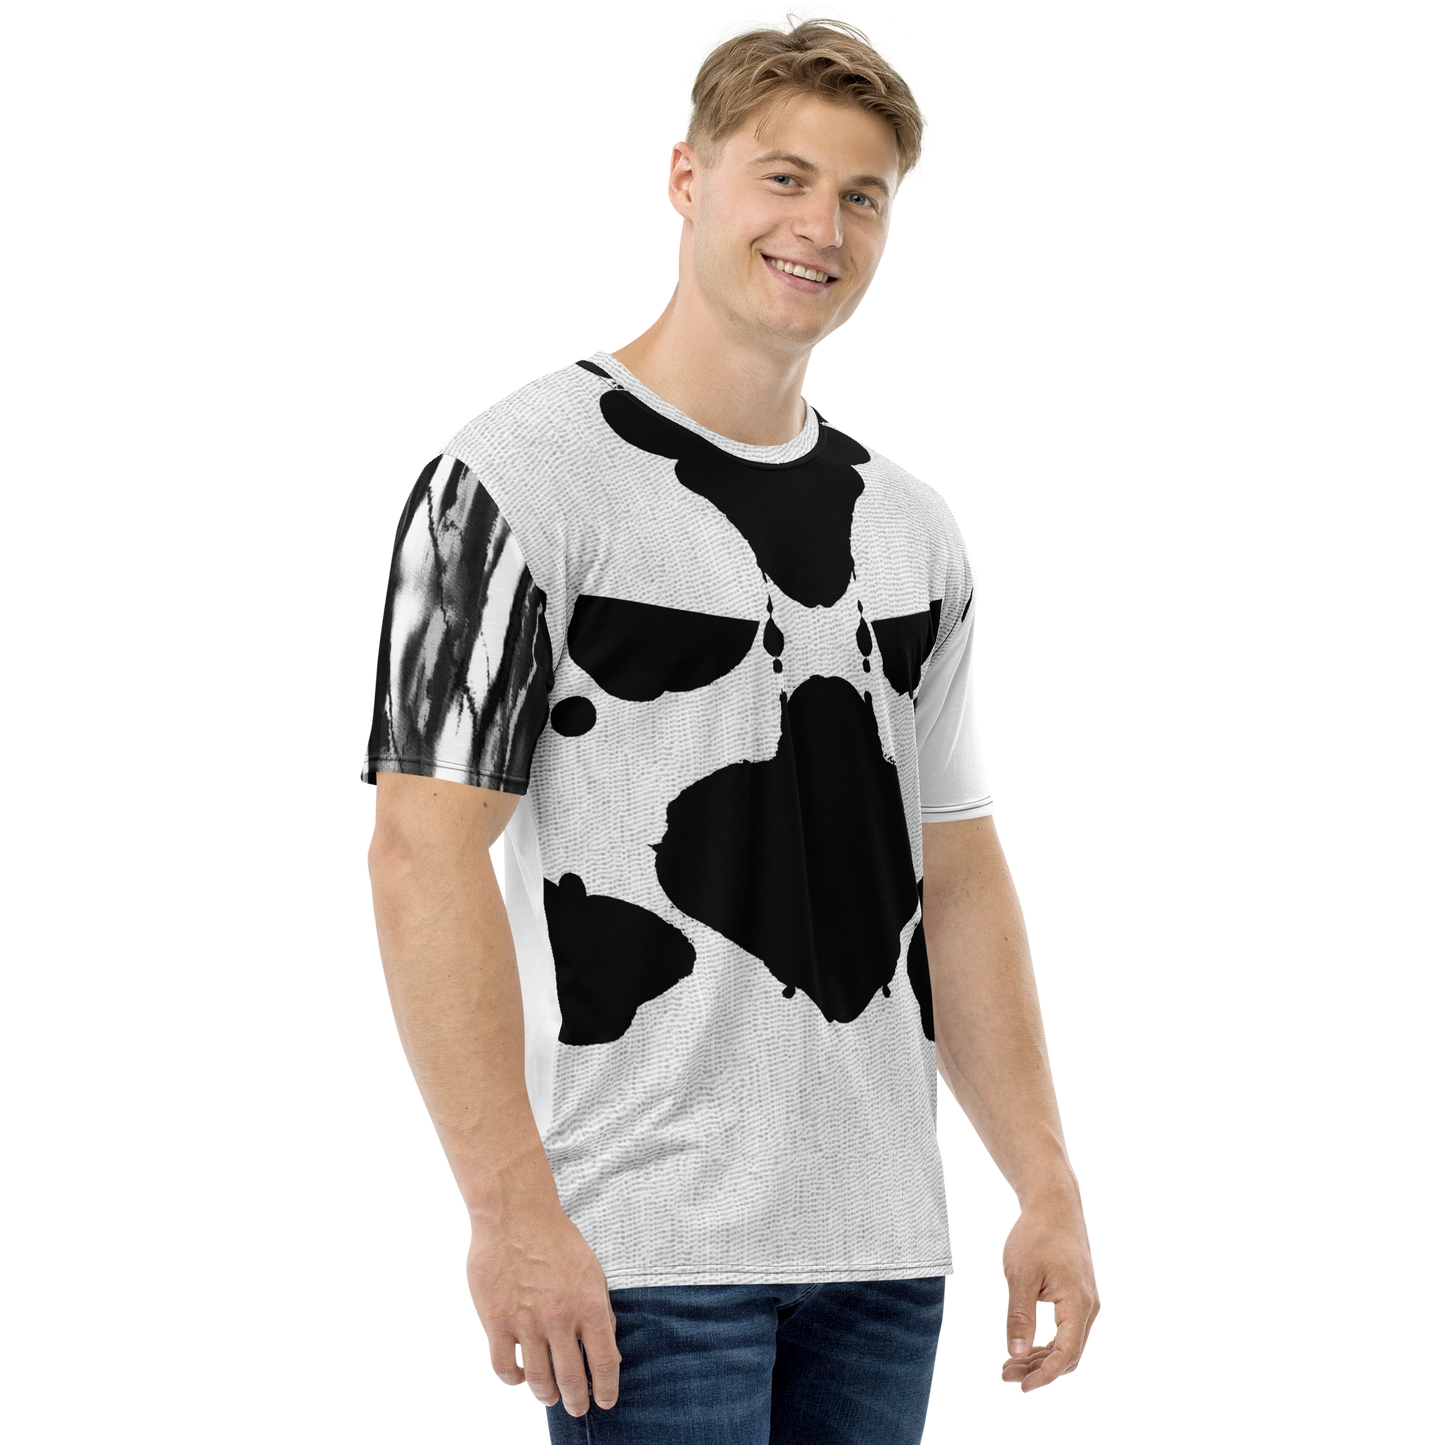 Rorschach - Men's t-shirt